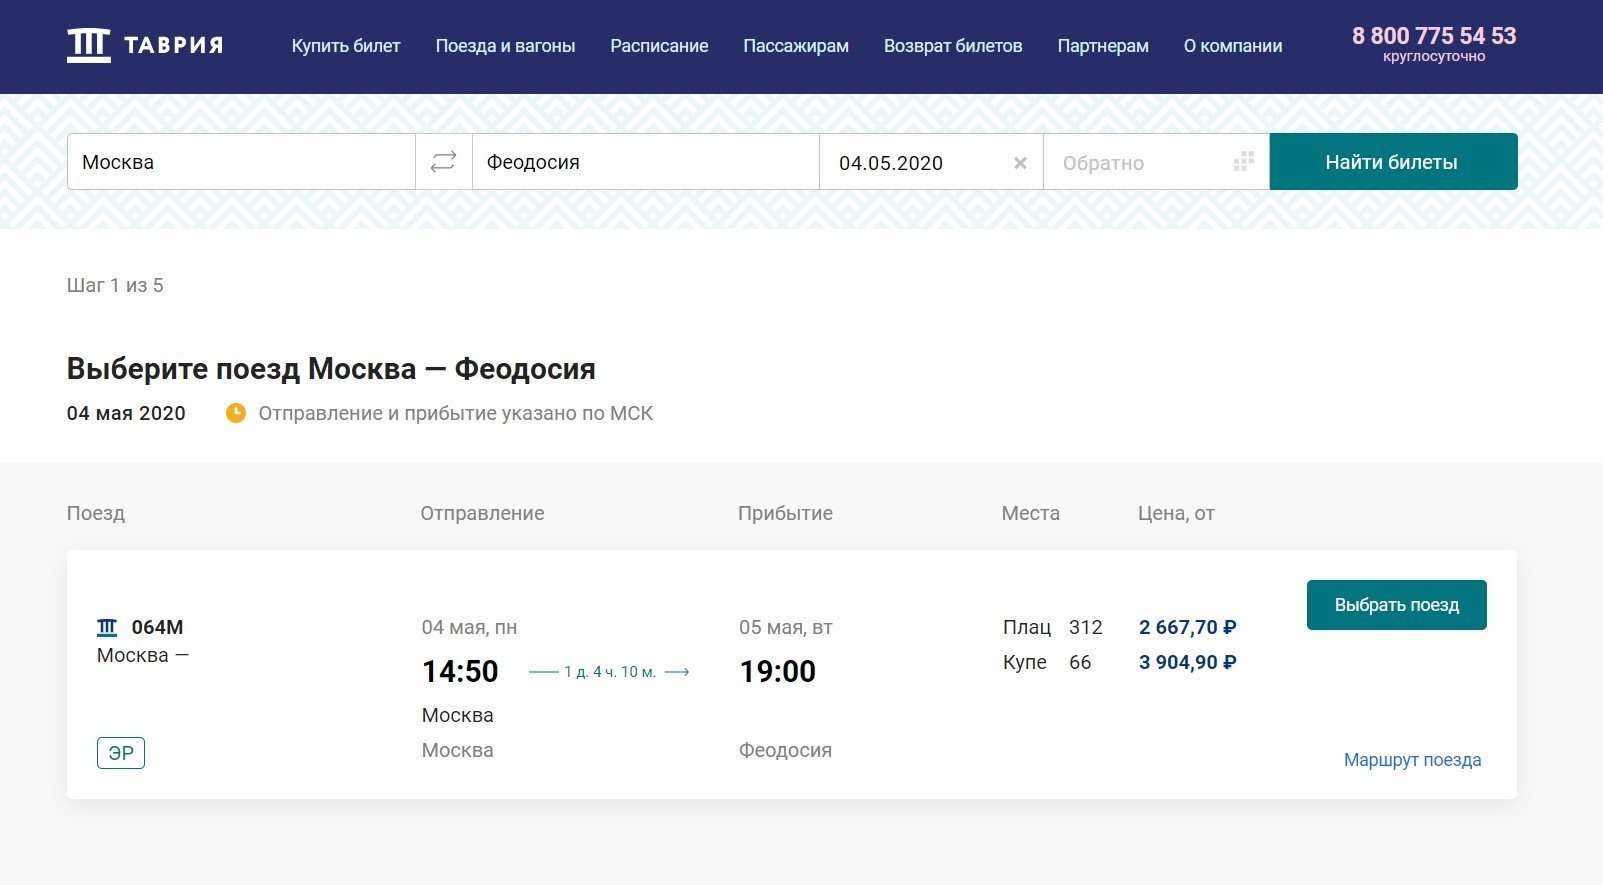 Продажа билетов на поезд Москва - Феодосия